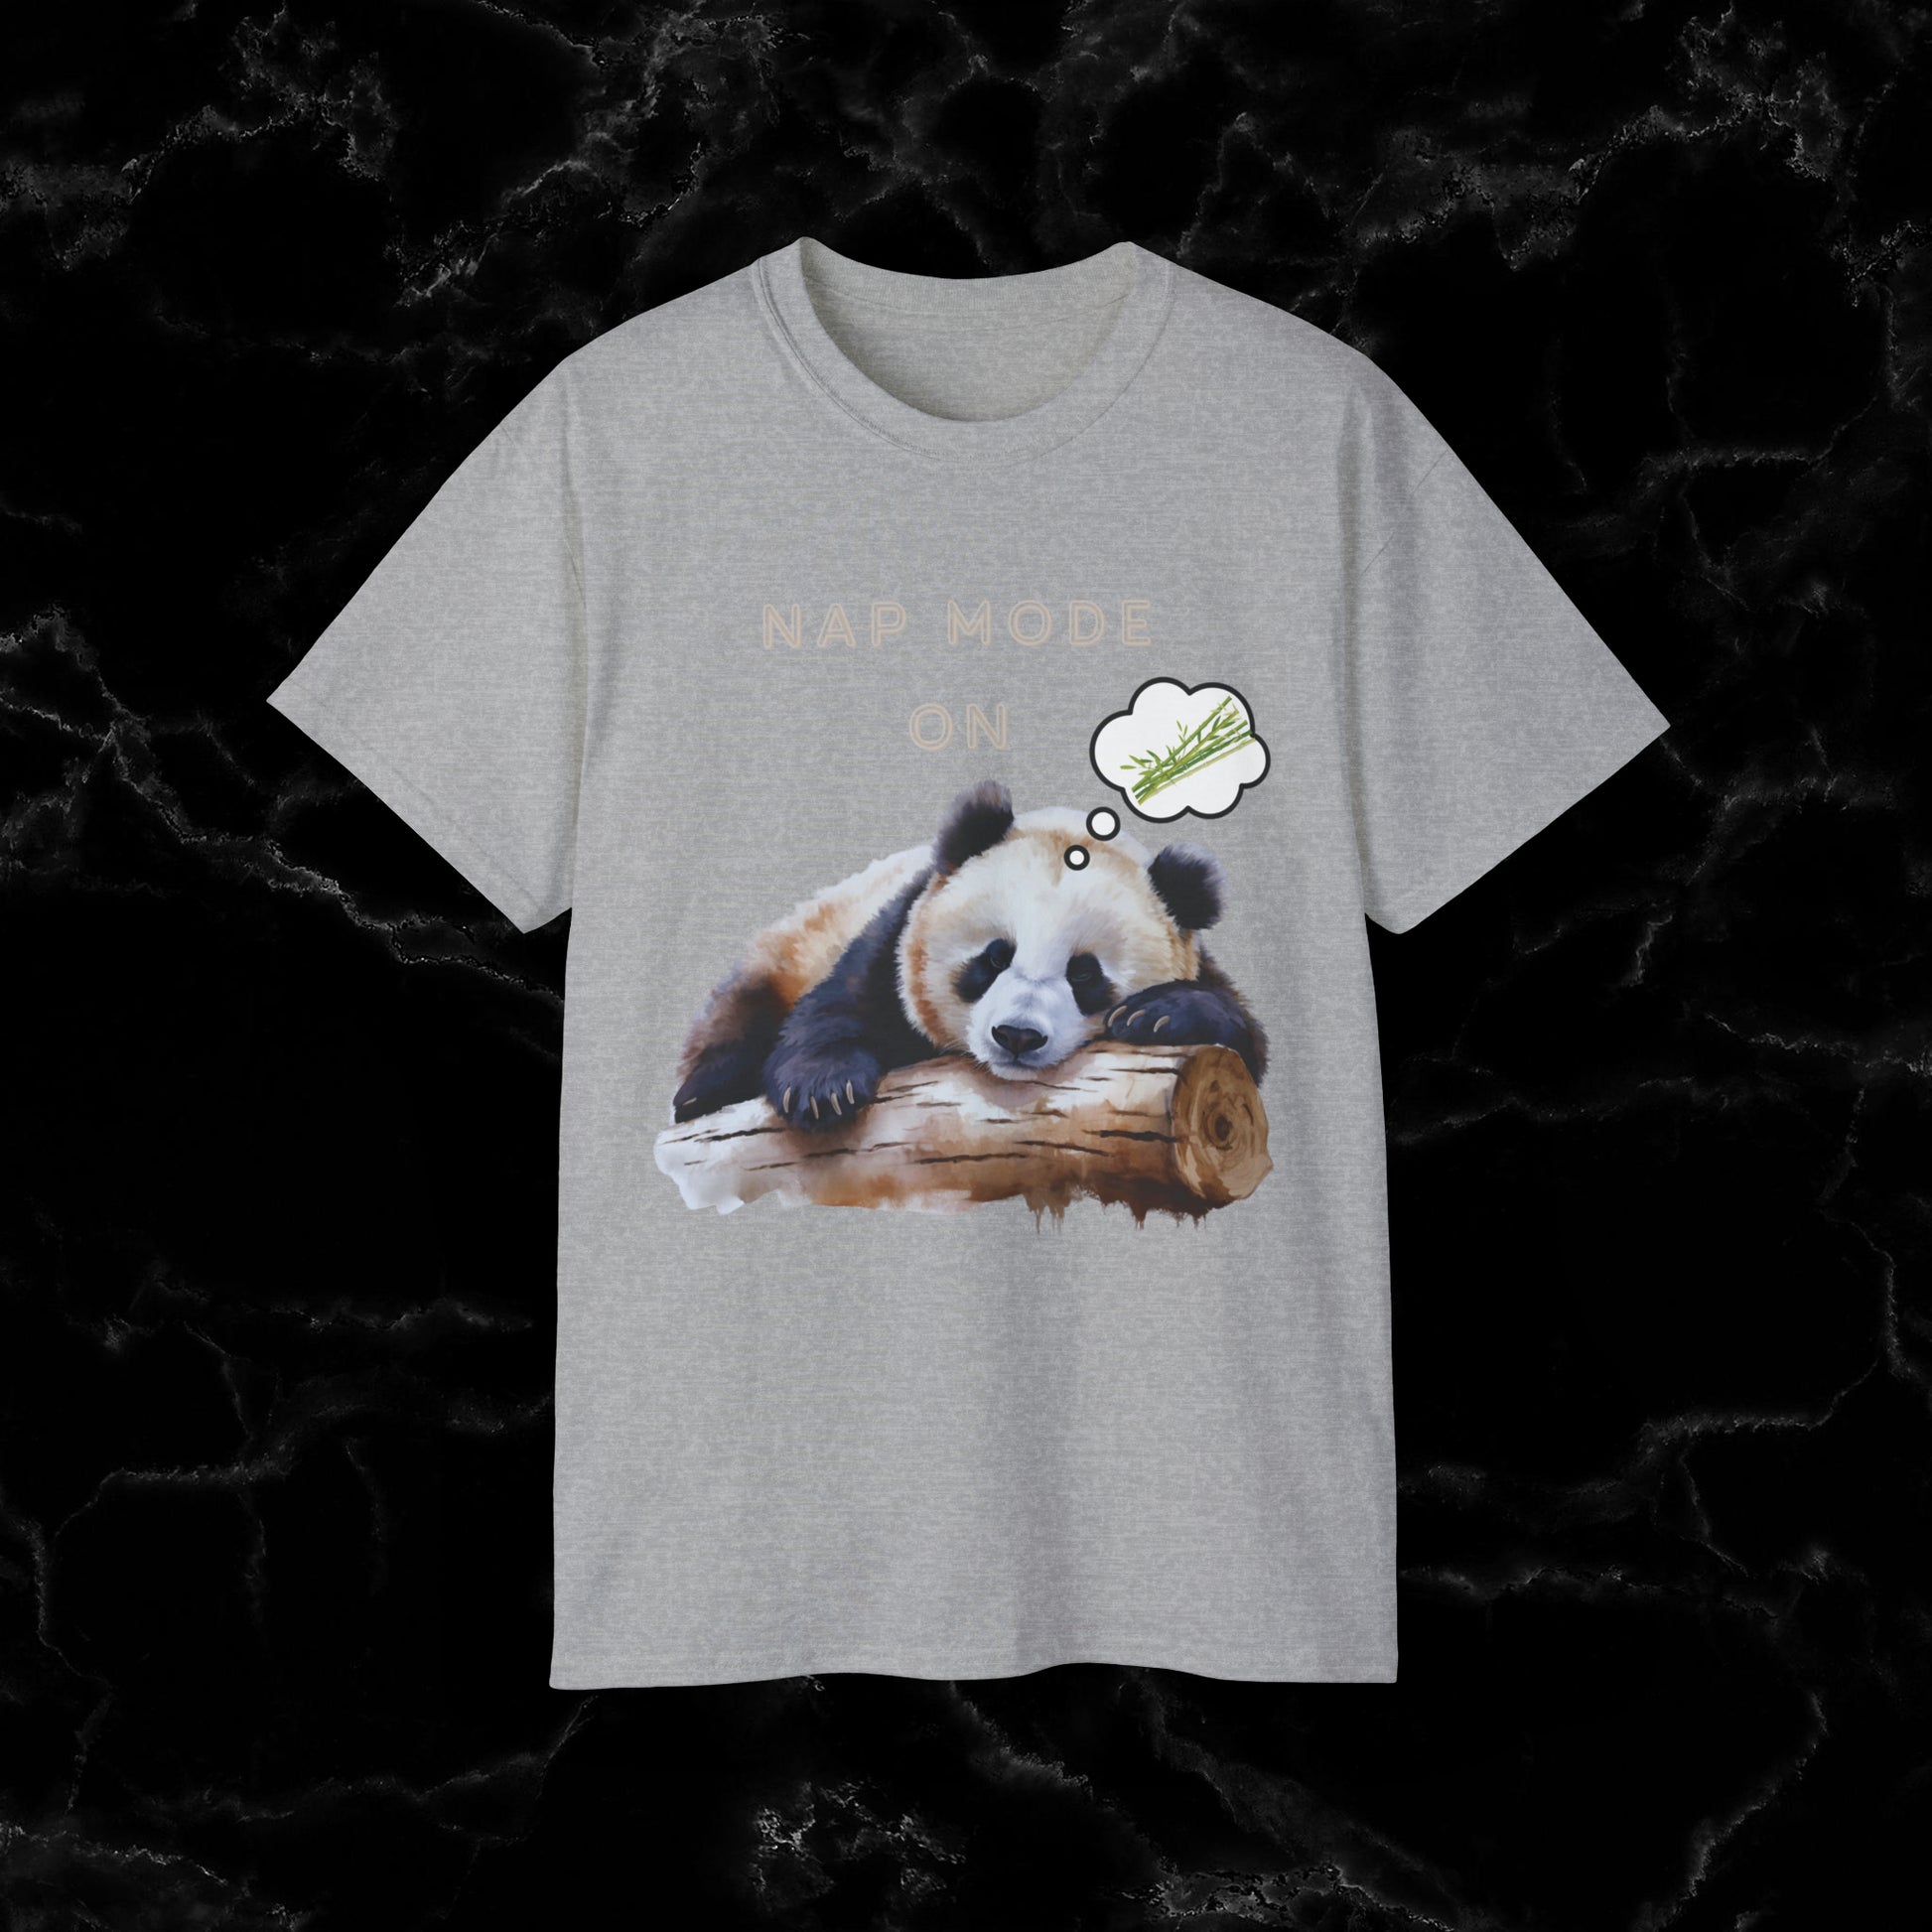 Nap Time Panda Unisex Funny Tee - Hilarious Panda Nap Mode On T-Shirt Sport Grey S 